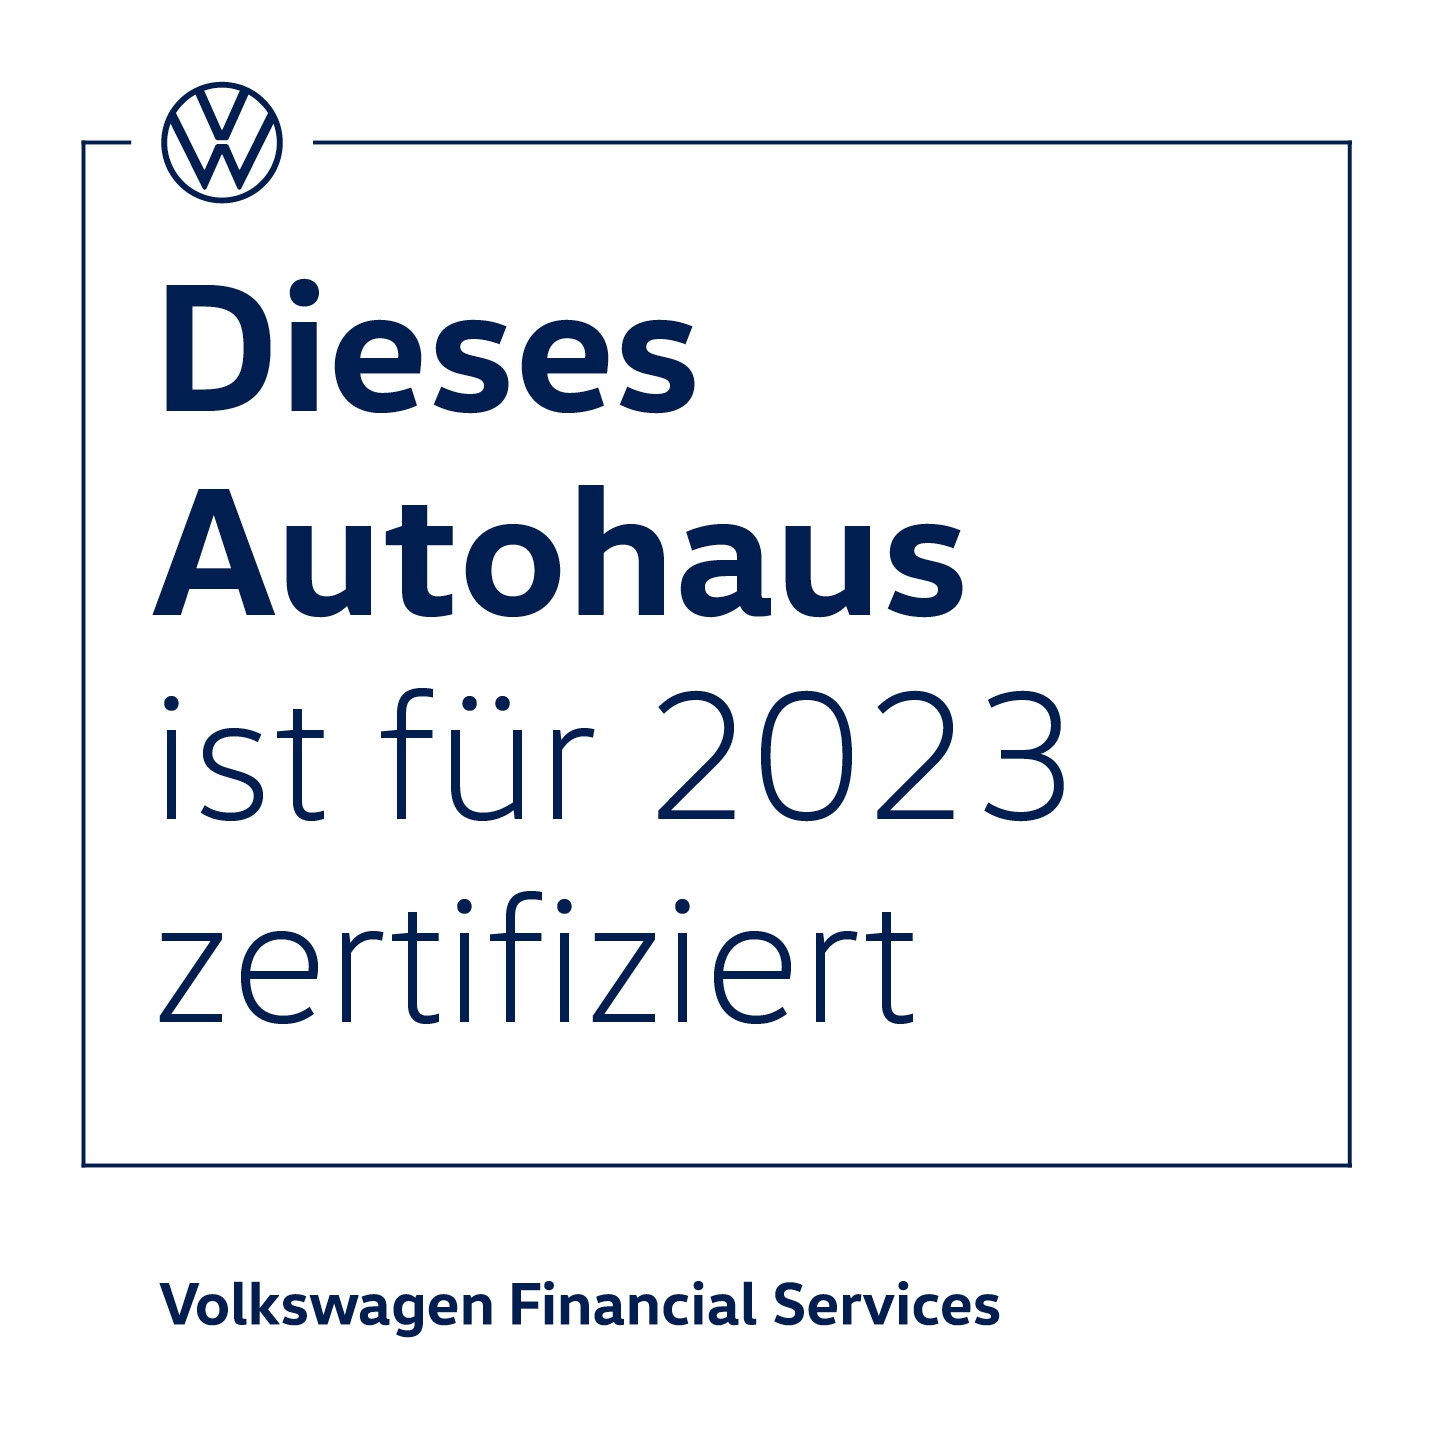 Zertifikat der Volkswagen Financial Service für das Autohaus Thierolf und die Leasing-Zertifizierung in 2023.